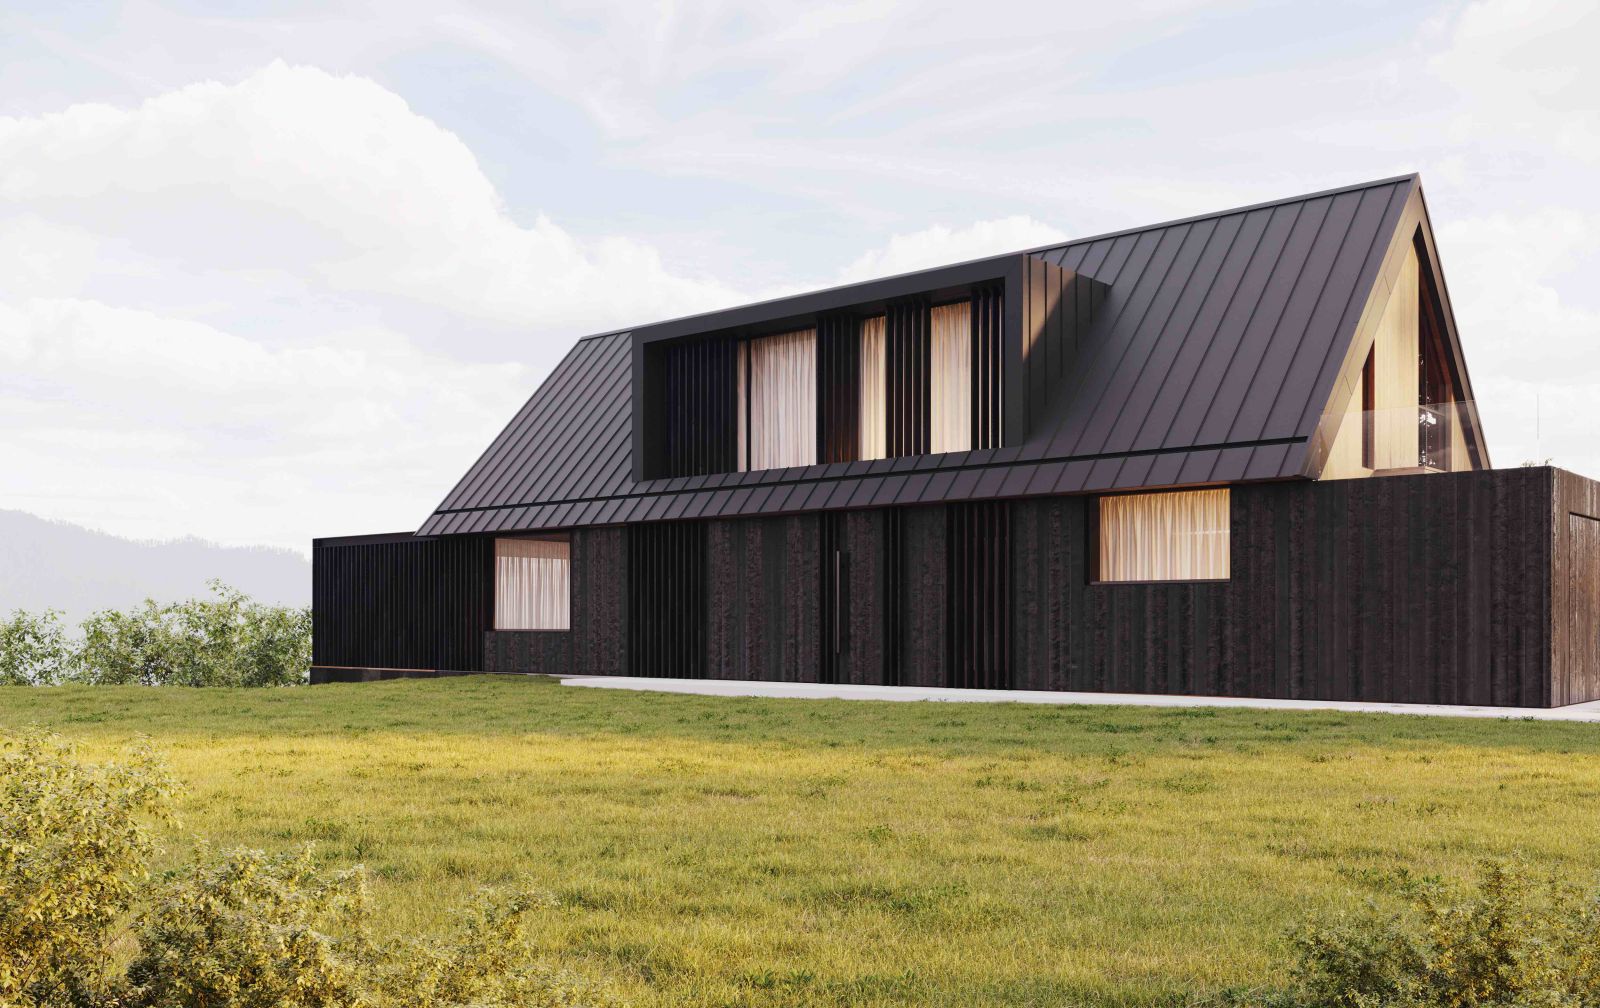 Galeco DACHRYNNA to połączenie pokrycia dachowego w formie panelu na rąbek z system rynnowym ukrytym w połaci dachu i w warstwie ocieplenia budynku (fot. GALECO)